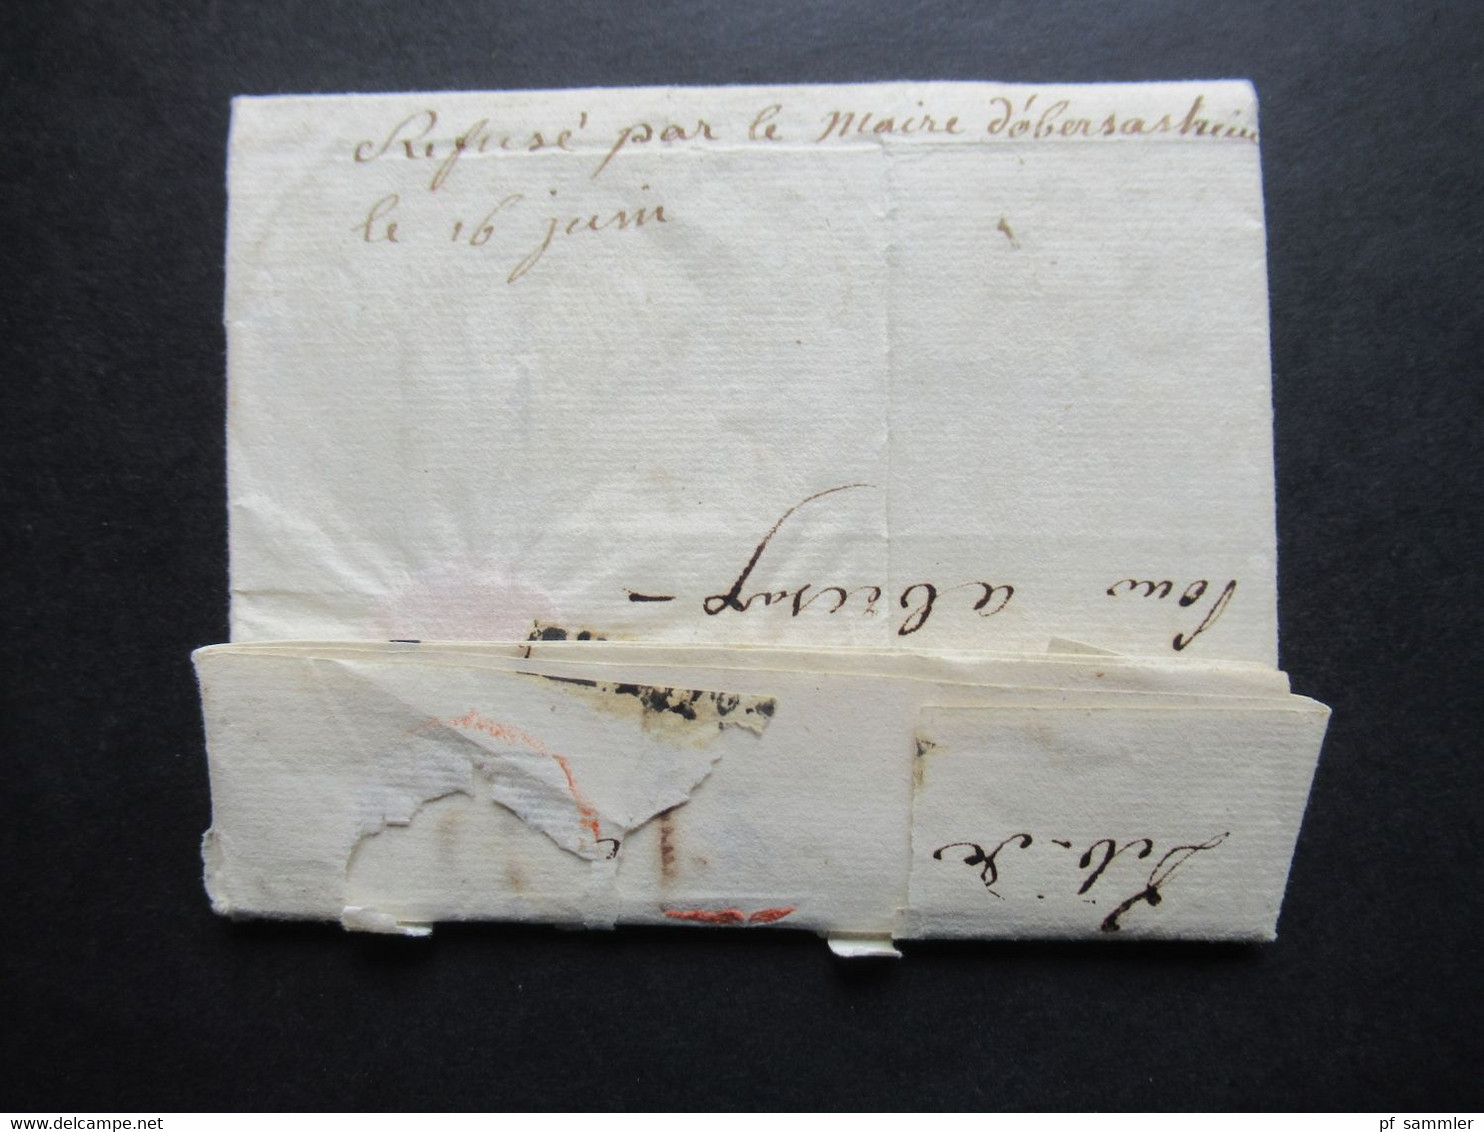 Frankreich 1806 Departement Conquis 91 Ostende handschriftlich Service Militaire / Armée  Brief doppelt verwendet!